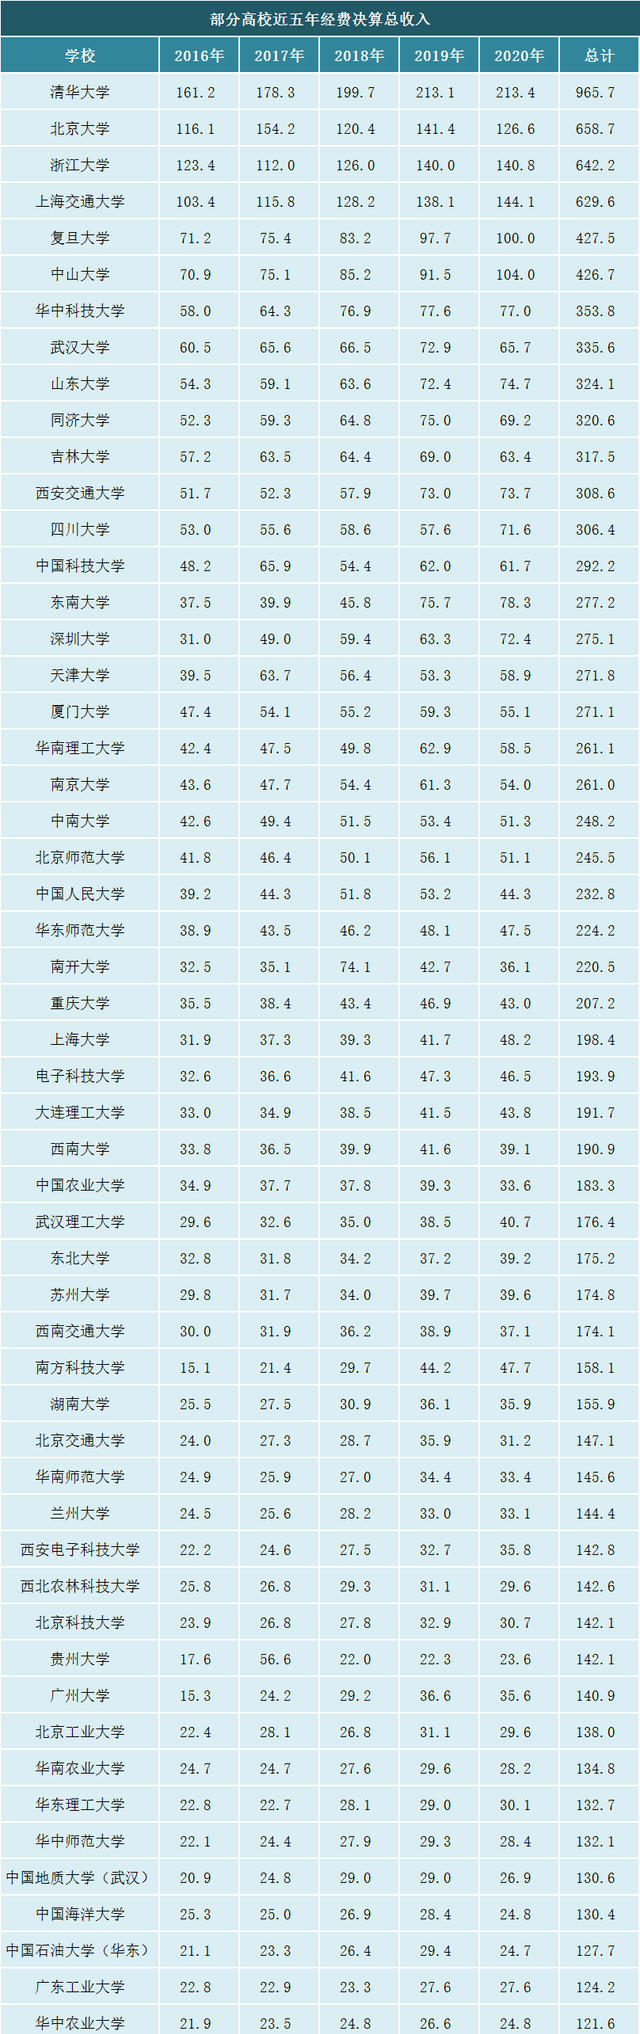 211上海大学有多牛？五年来经费持续增涨，已超过985电子科技大学